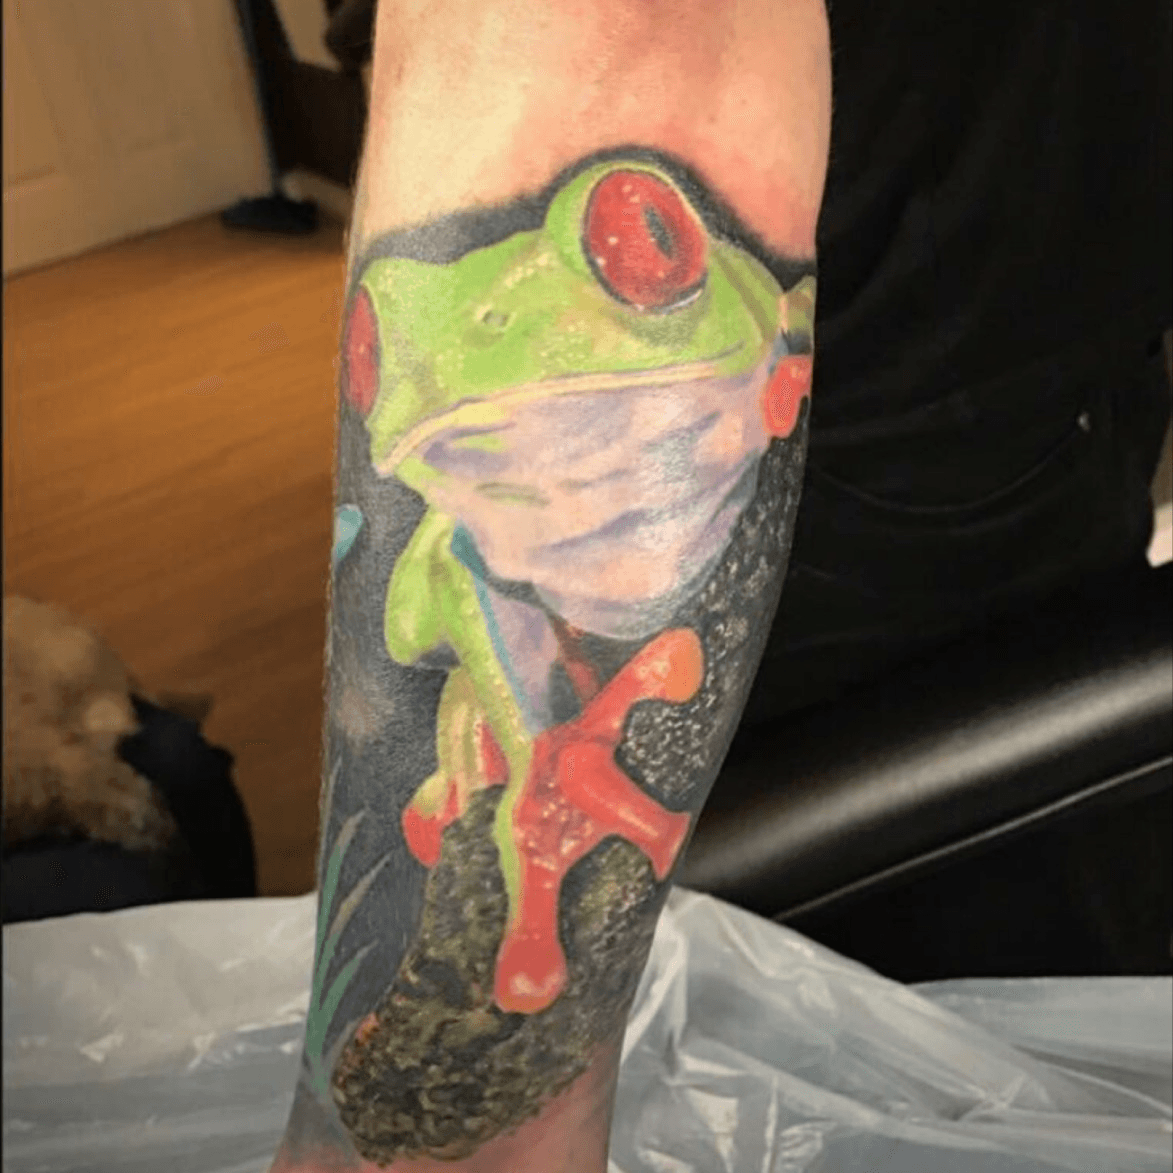 Cute Tree Frog Tattoo